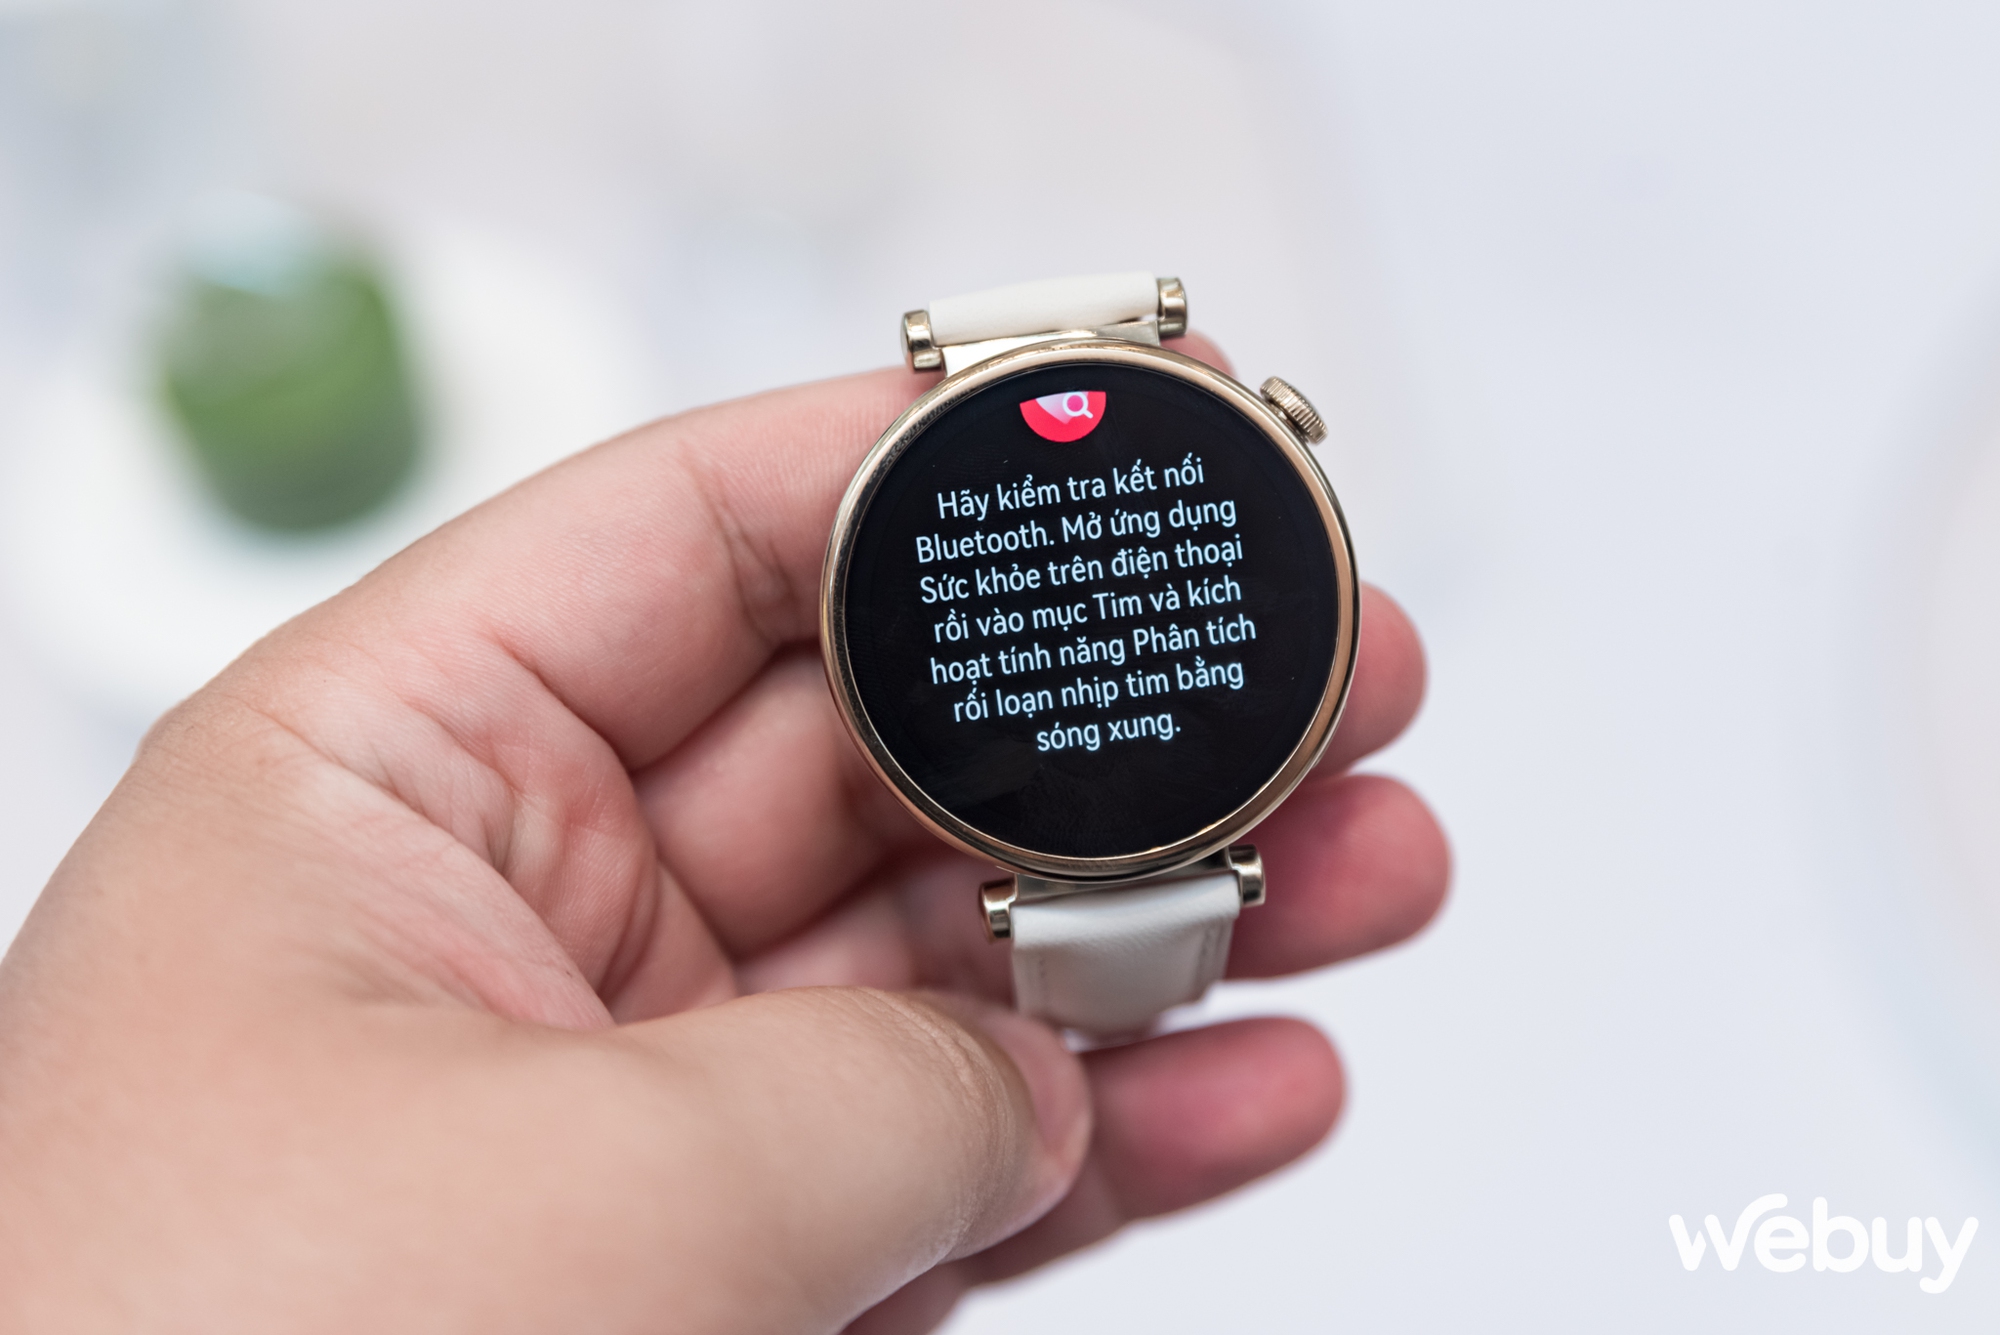 Huawei ra mắt Watch GT 4: Thiết kế đa phong cách, nhiều cải tiến sức khoẻ lẫn thể thao, giá từ 6 triệu đồng - Ảnh 14.